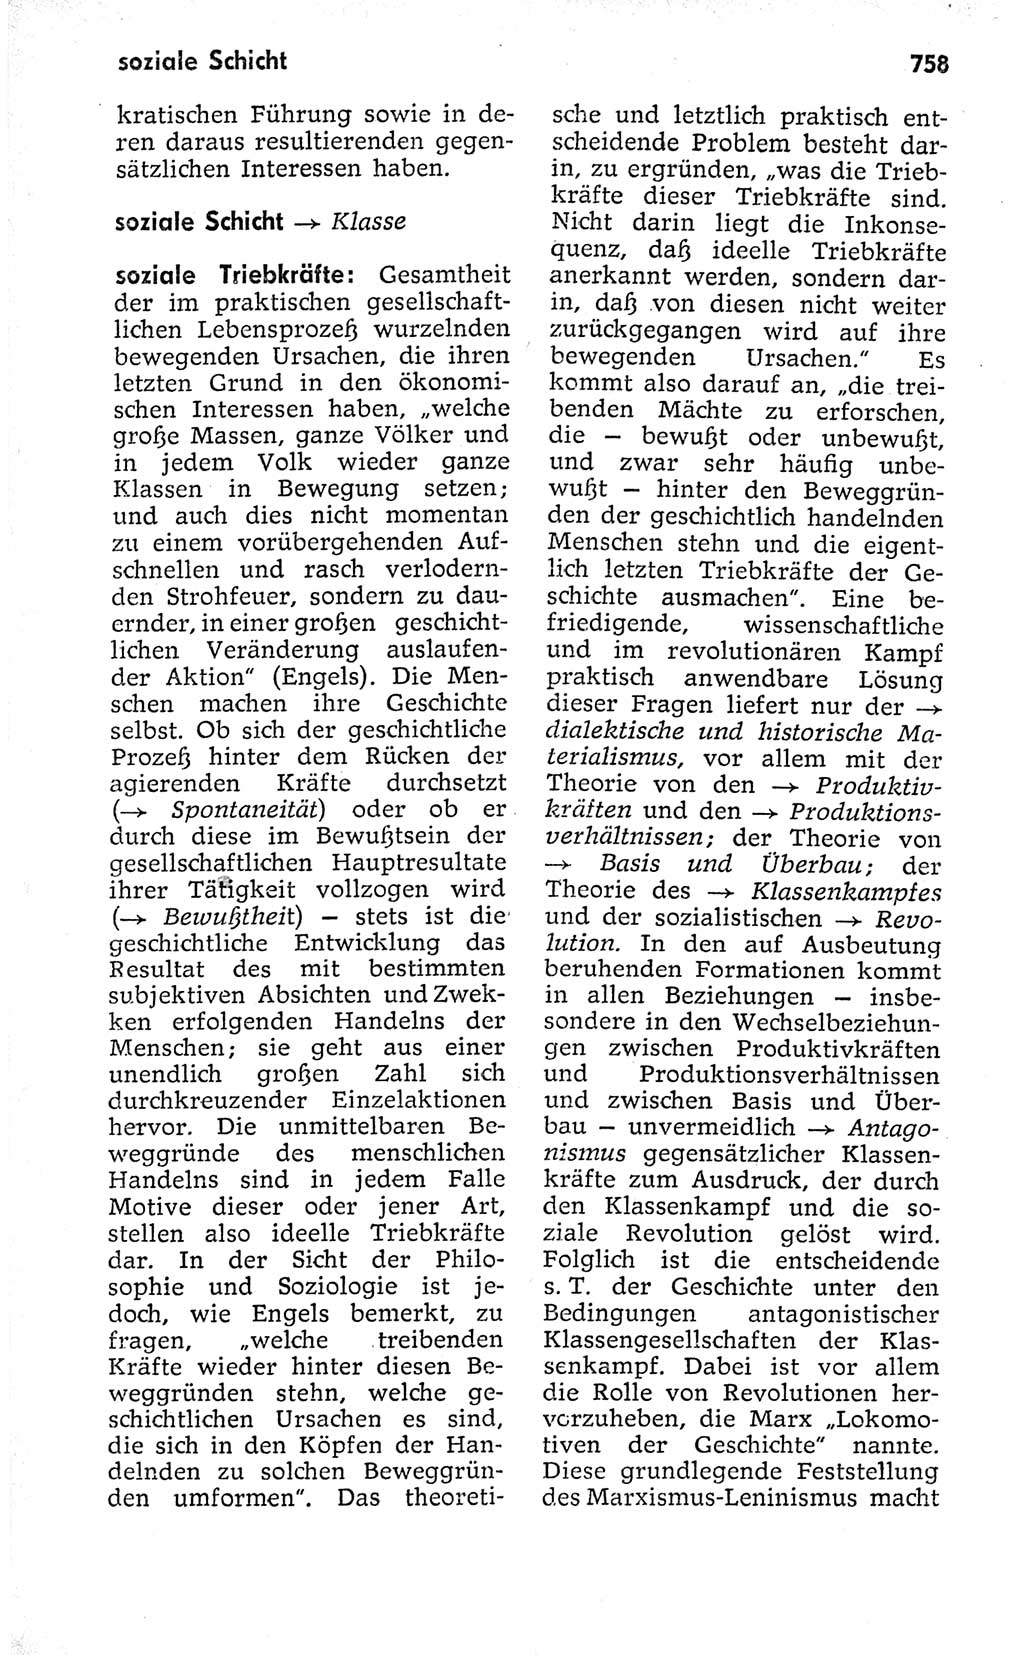 Kleines politisches Wörterbuch [Deutsche Demokratische Republik (DDR)] 1973, Seite 758 (Kl. pol. Wb. DDR 1973, S. 758)